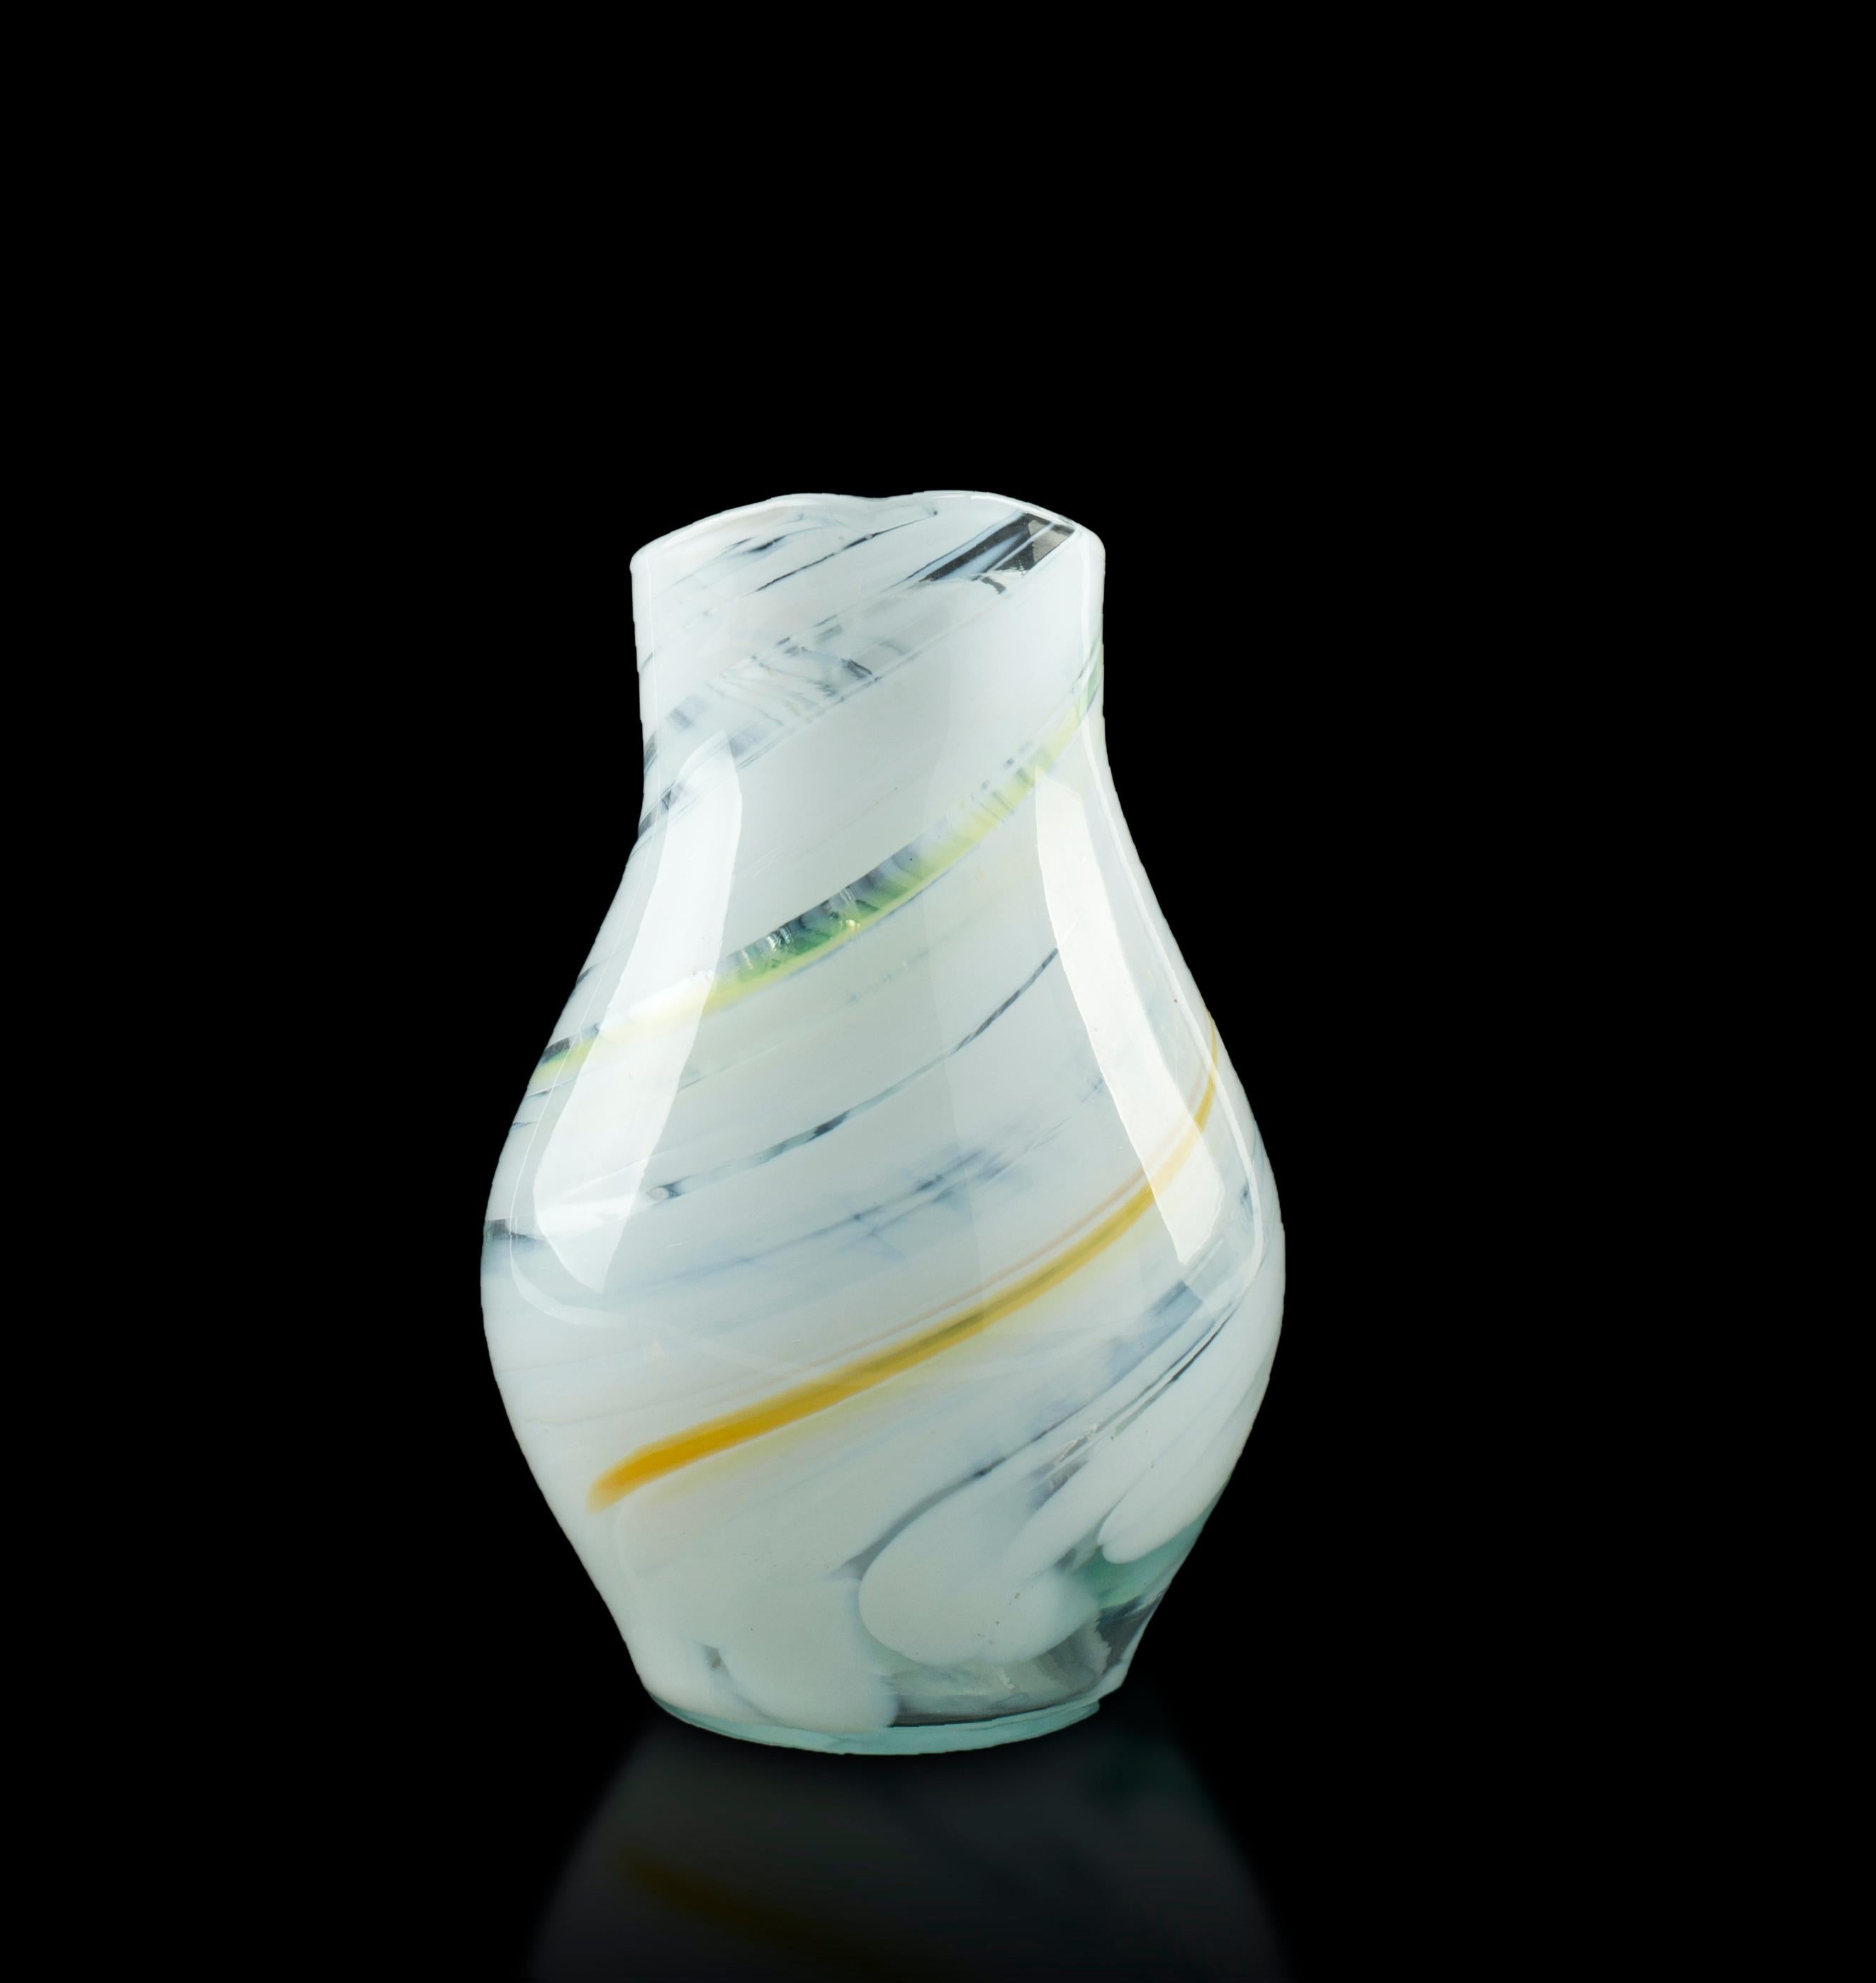 Diese Glaskaraffe ist ein wunderschöner weißer Glaskrug mit gelben und grünen Schlieren, der in den 1980er Jahren von einer nordeuropäischen Manufaktur hergestellt wurde.

Dieses dekorative Objekt ist in ausgezeichnetem Zustand.

Dieses Objekt wird